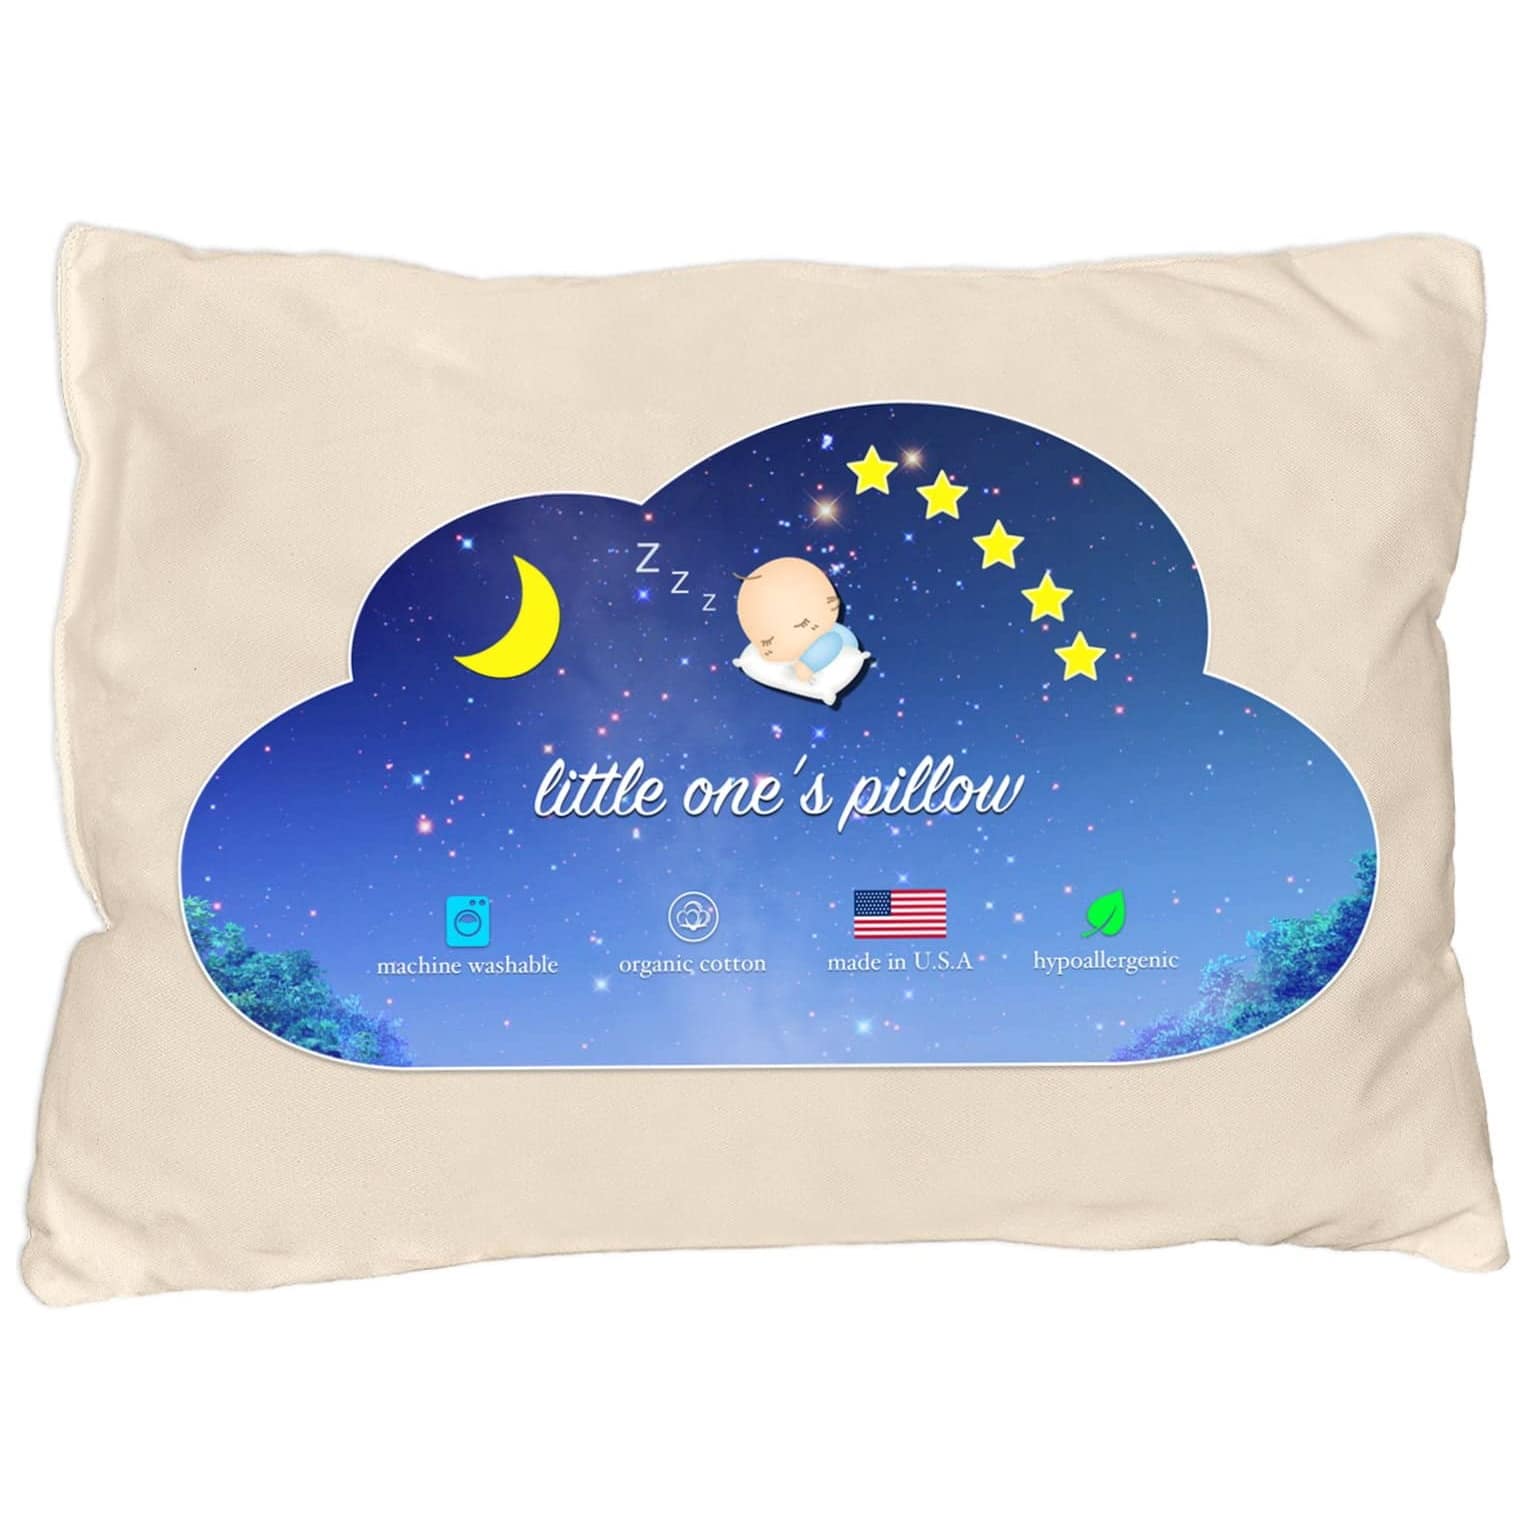 Little One’s Pillow